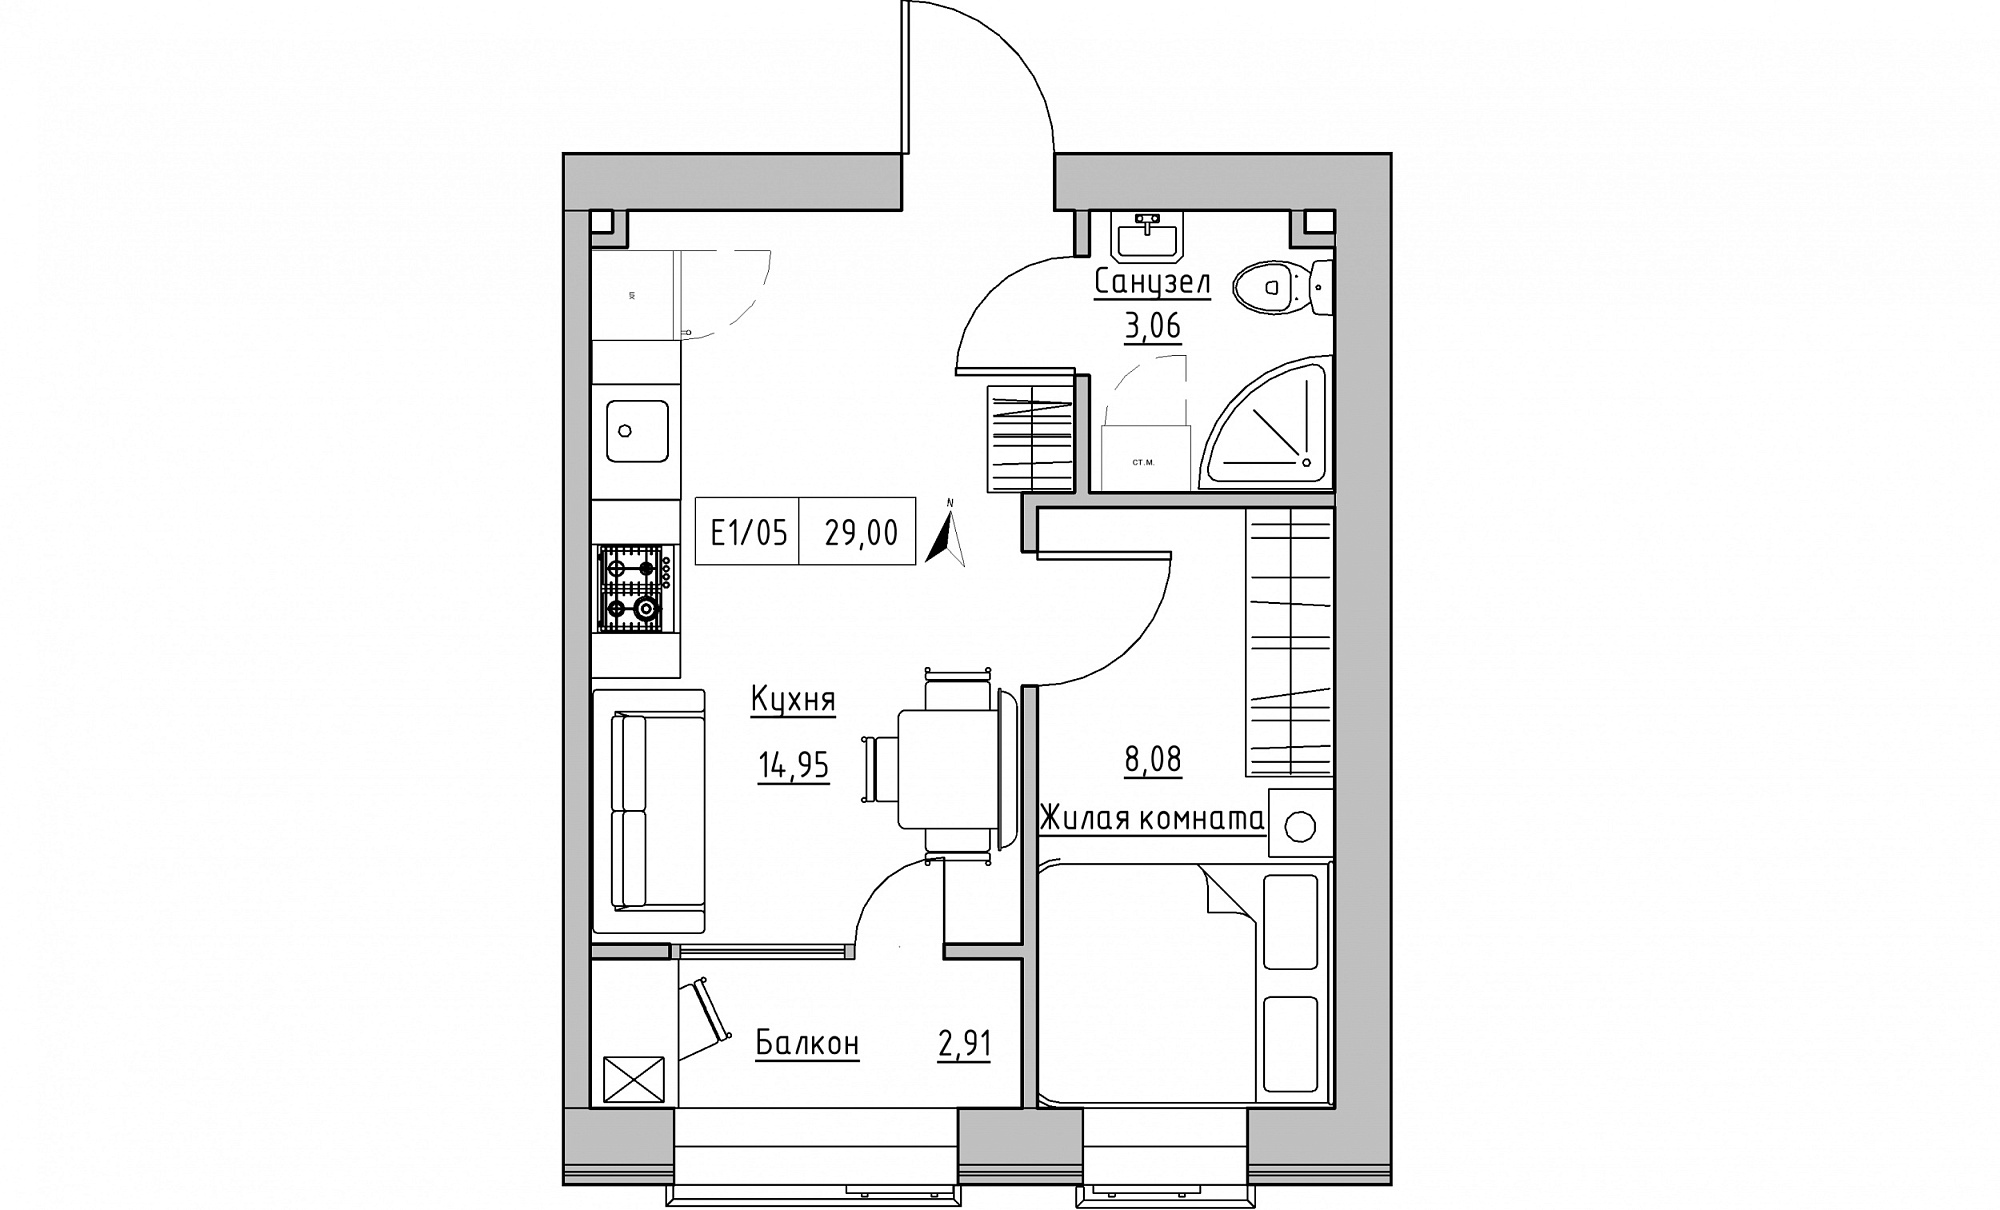 Планировка 1-к квартира площей 29м2, KS-015-02/0009.